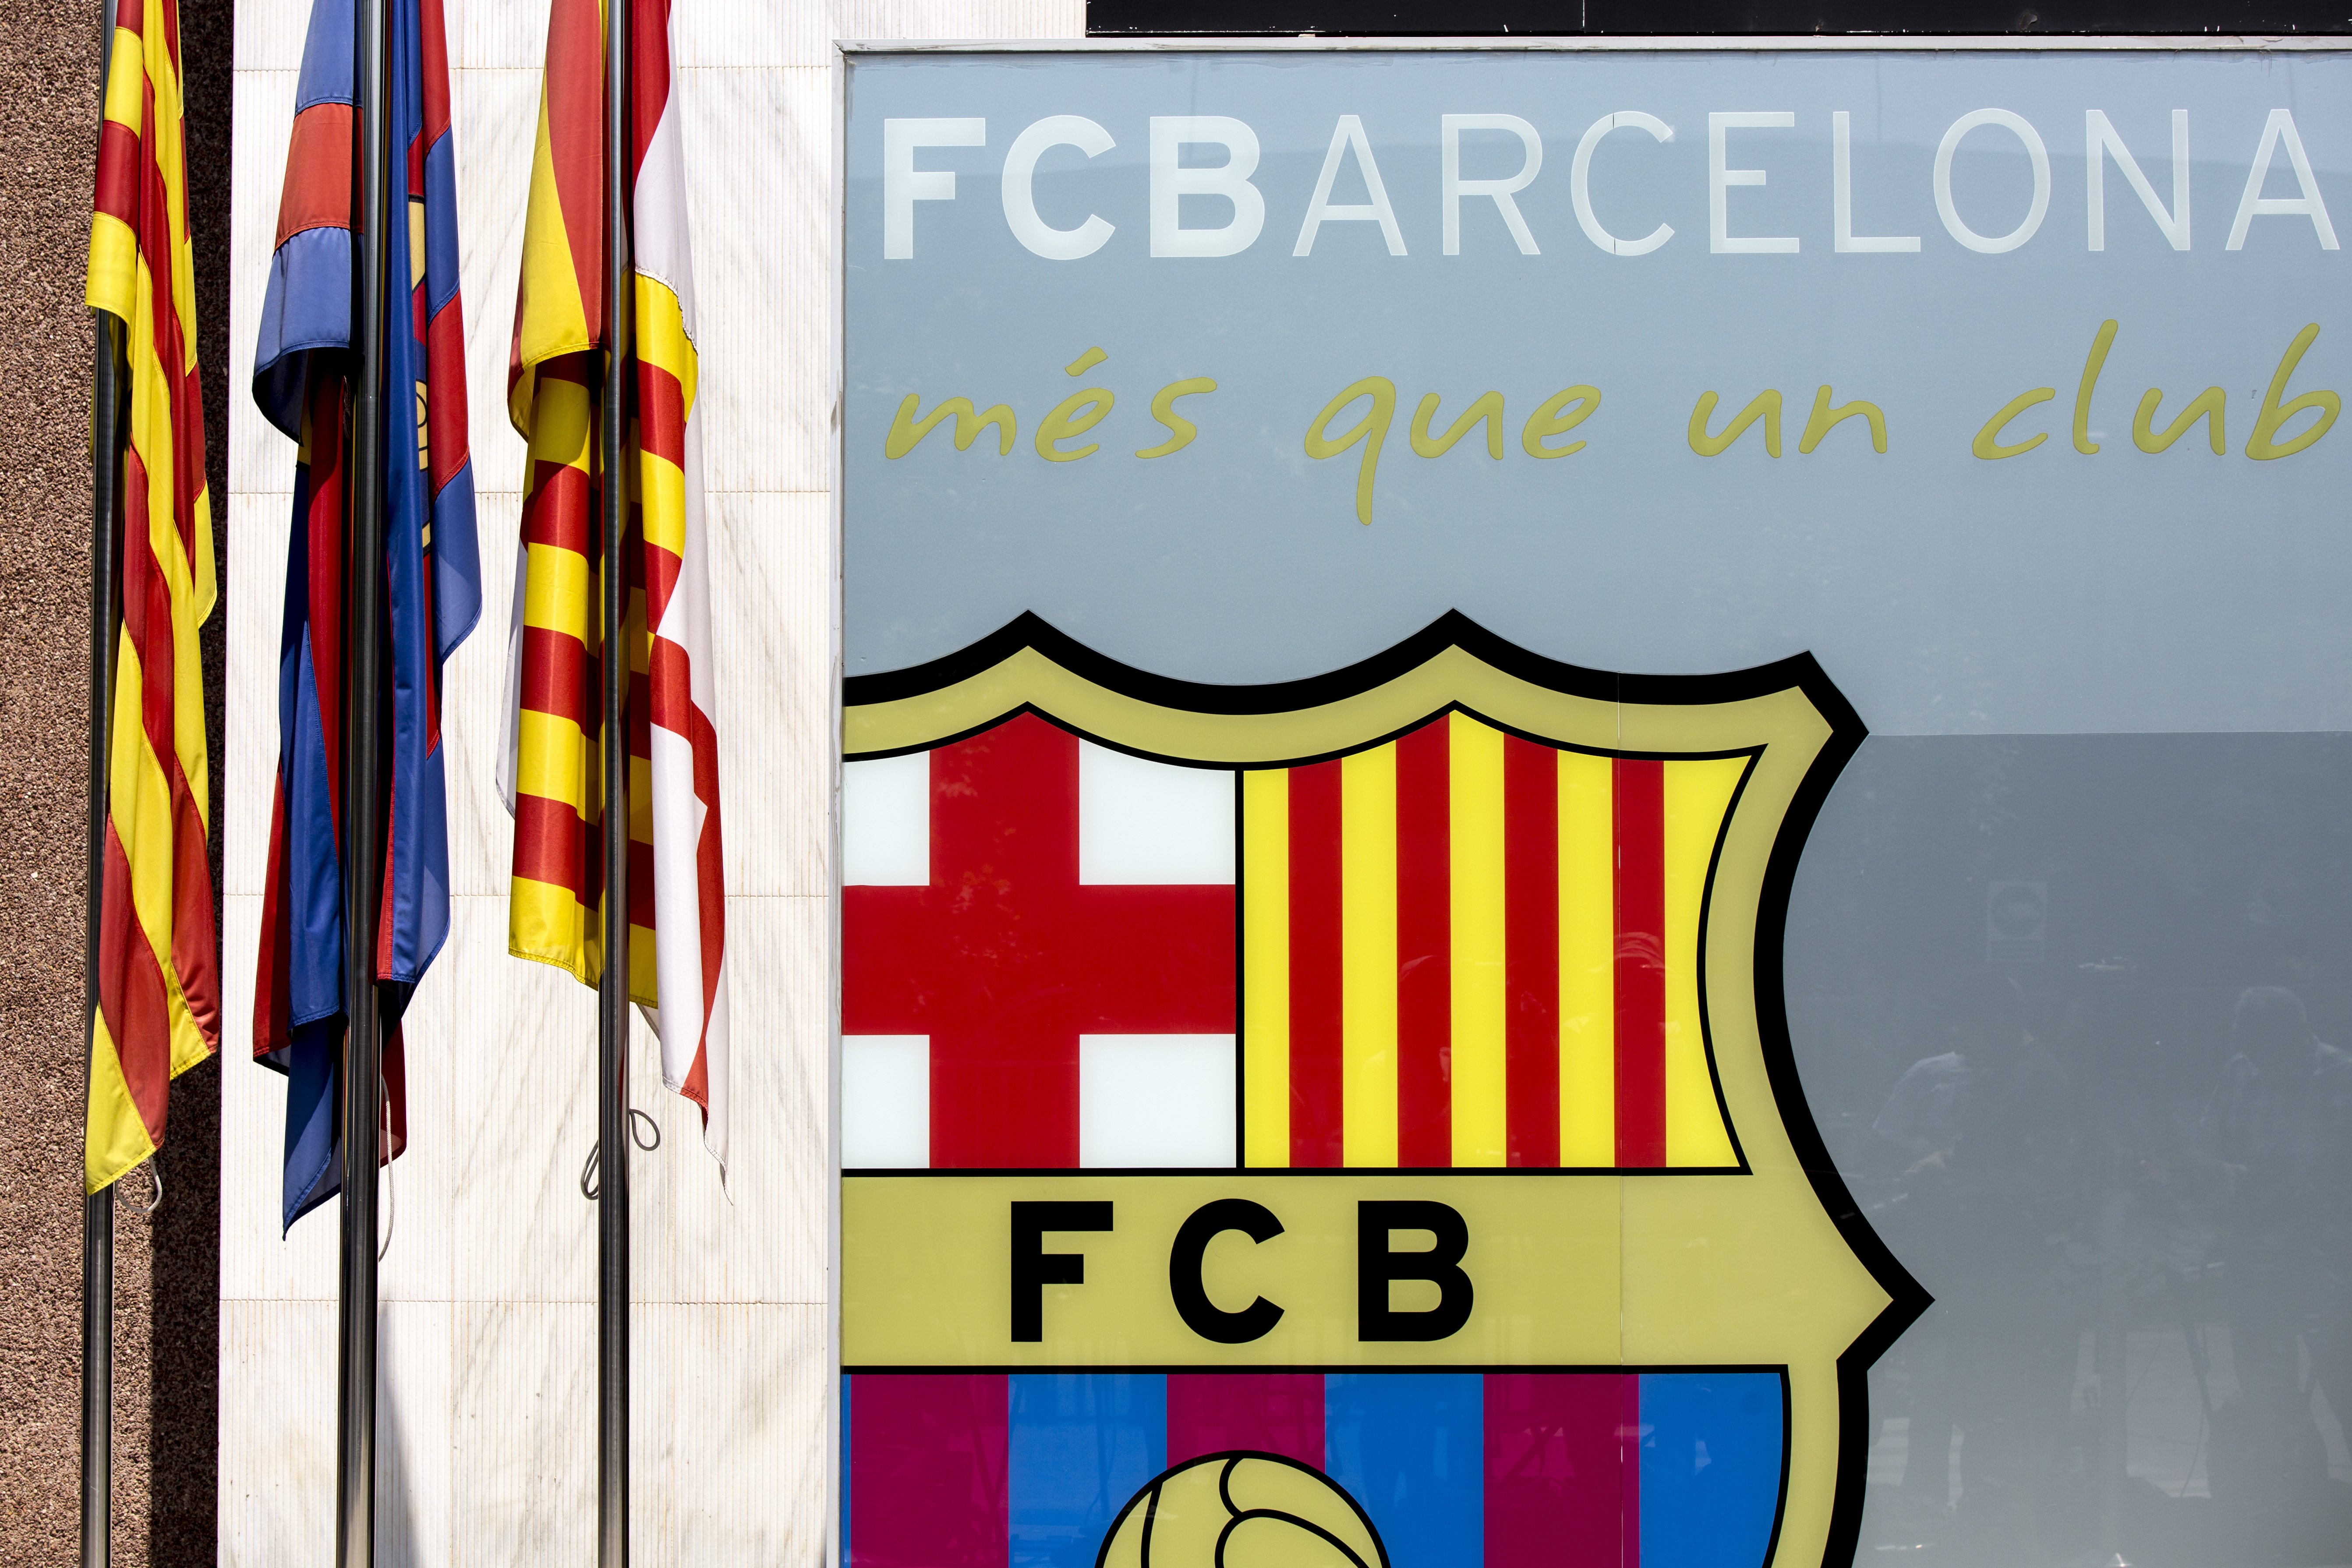 Contundente mensaje del Barça contra el racismo tras la muerte de George Floyd